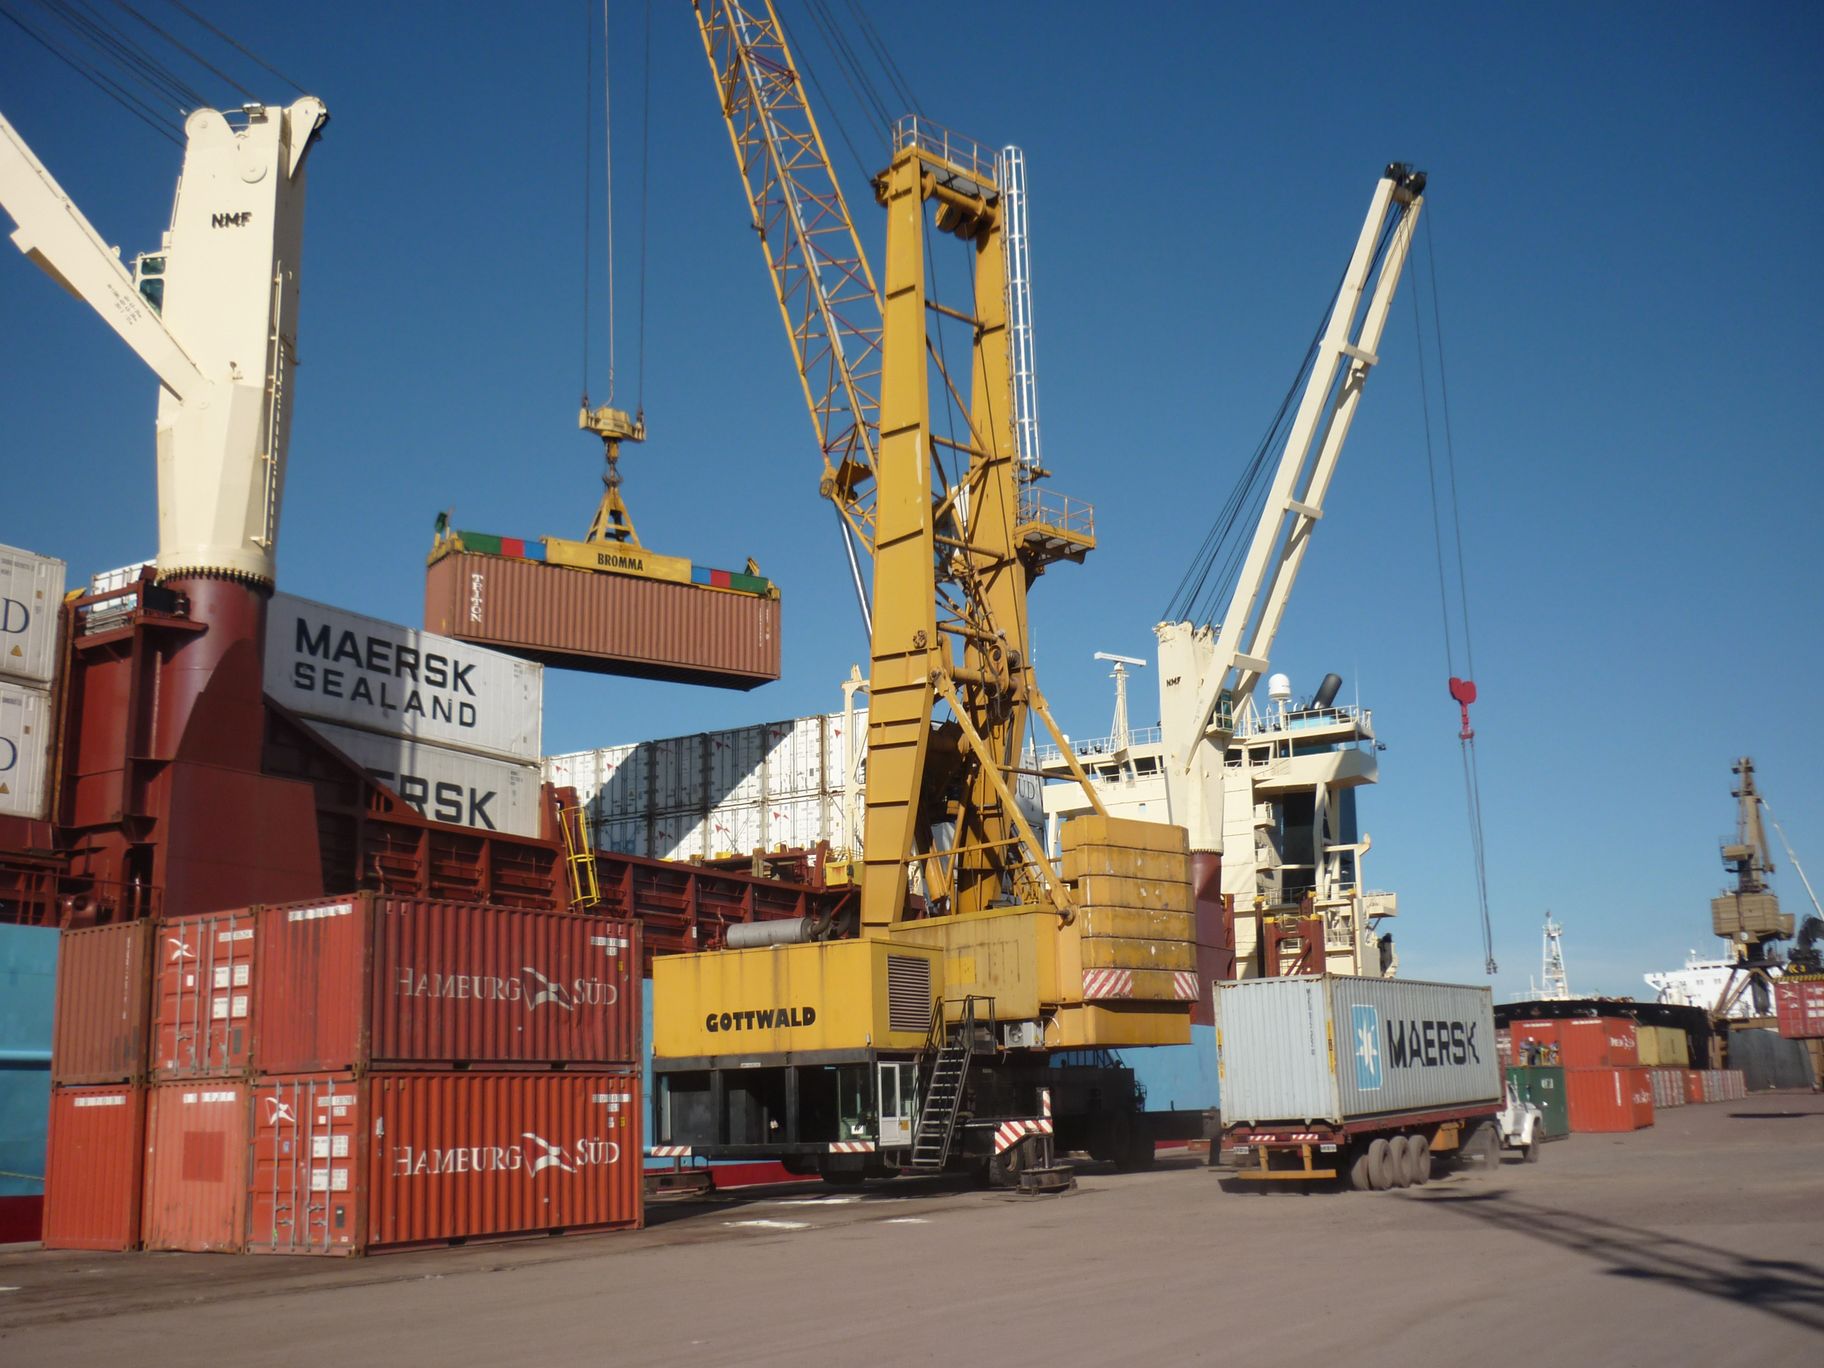 Intercambio comercial e integración sudamericana en la zona franca que Paraguay posse en el puerto de Rosario